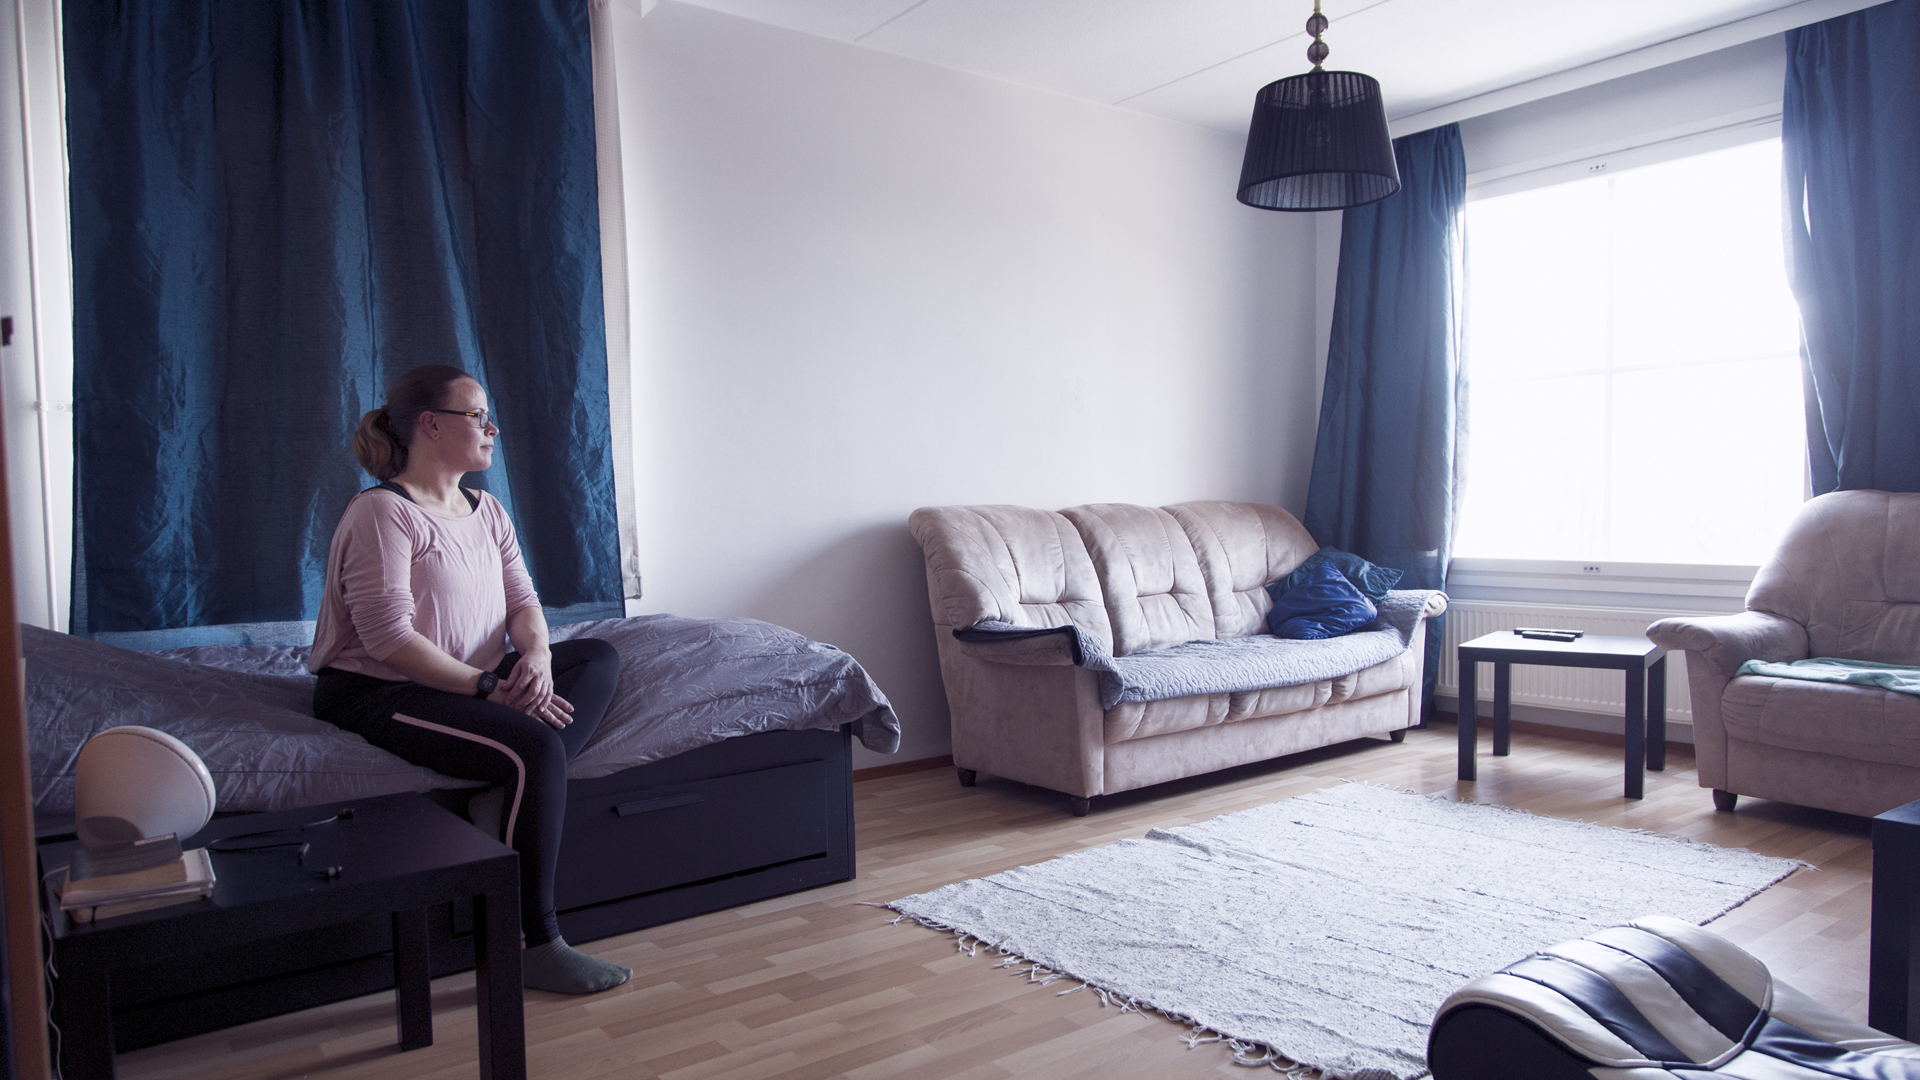 Kirsi Segerin viisihenkinen perhe asuu kaupungin 87 neliöisessä asunnossa, jonka vuokra on yli 1000 euroa kuussa. Kirsi nukkuu olohuoneessa, lapset kolmessa makuuhuoneessa.